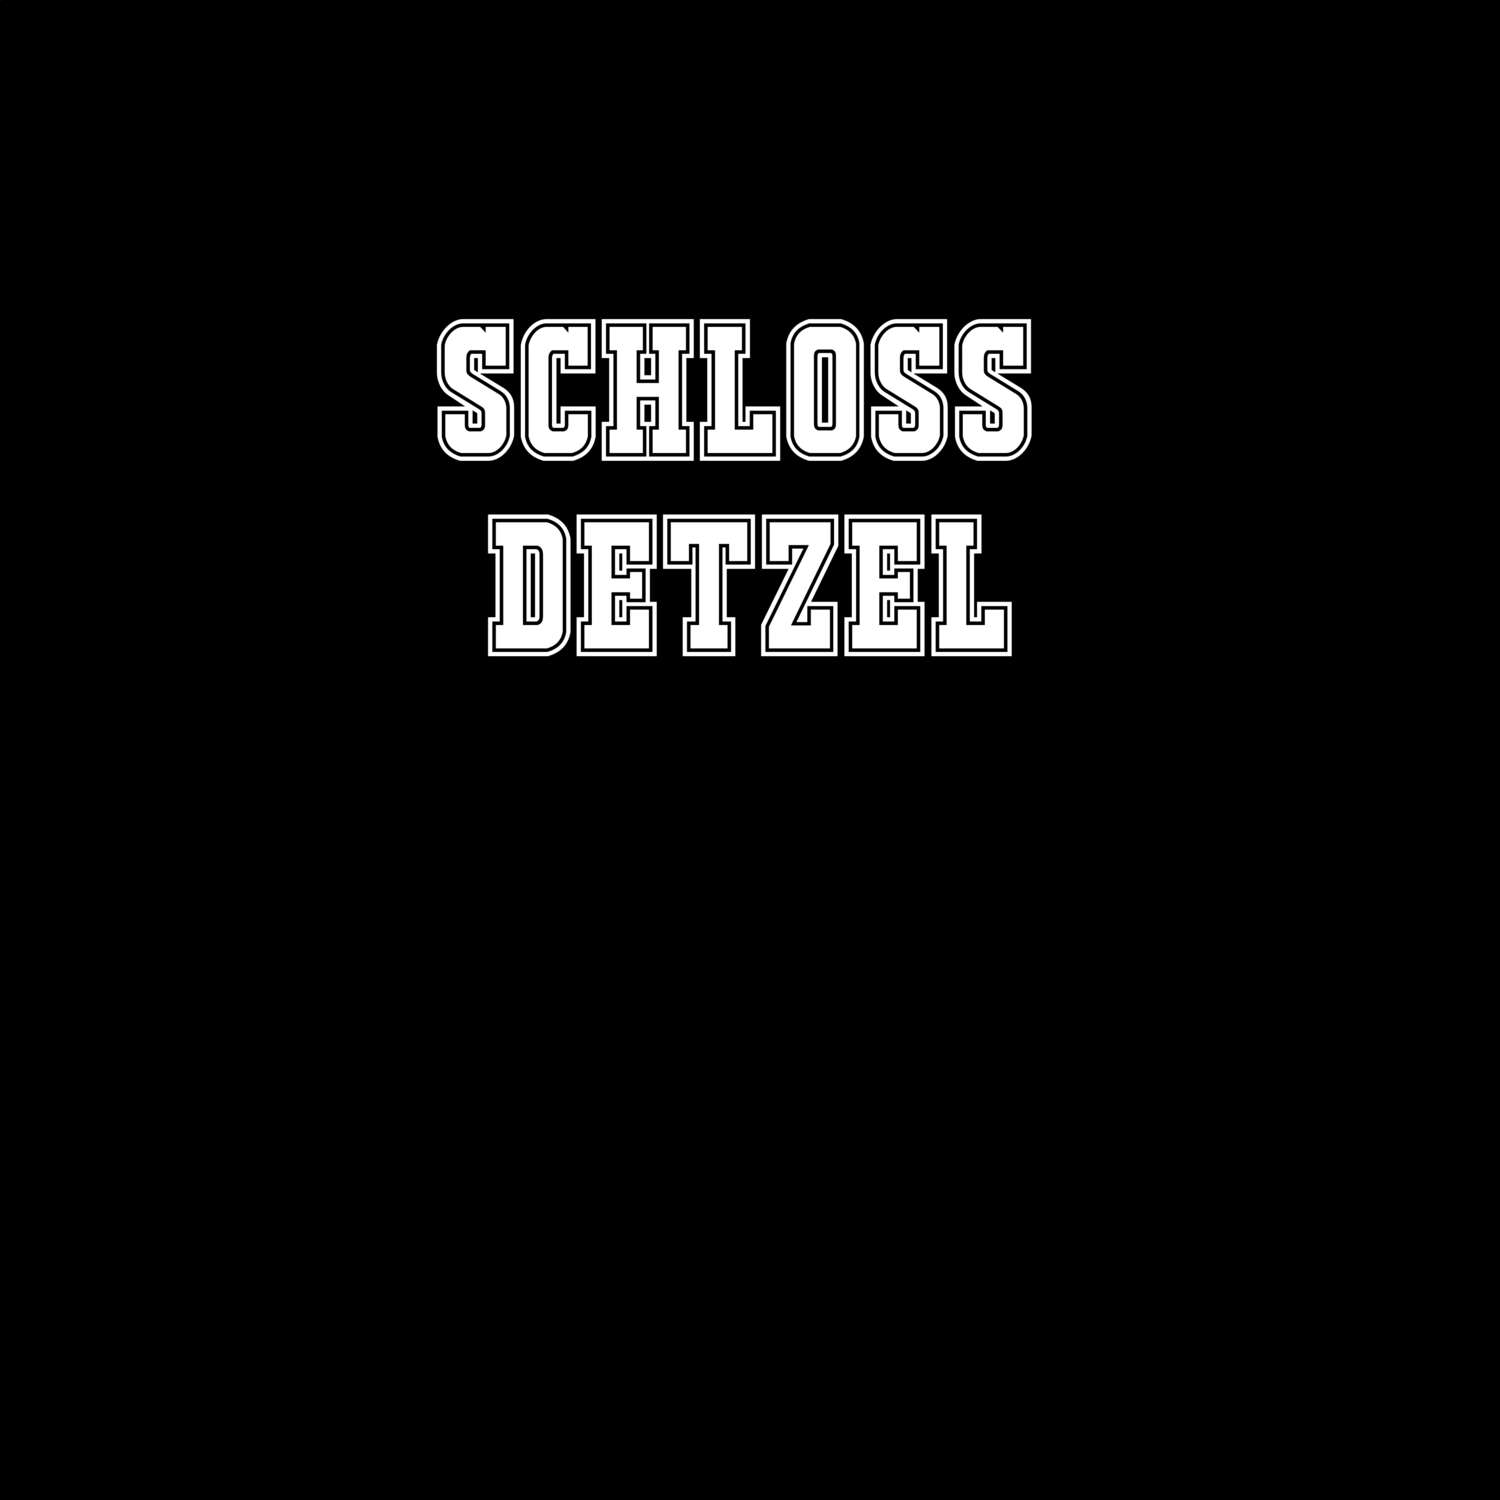 Schloss Detzel T-Shirt »Classic«